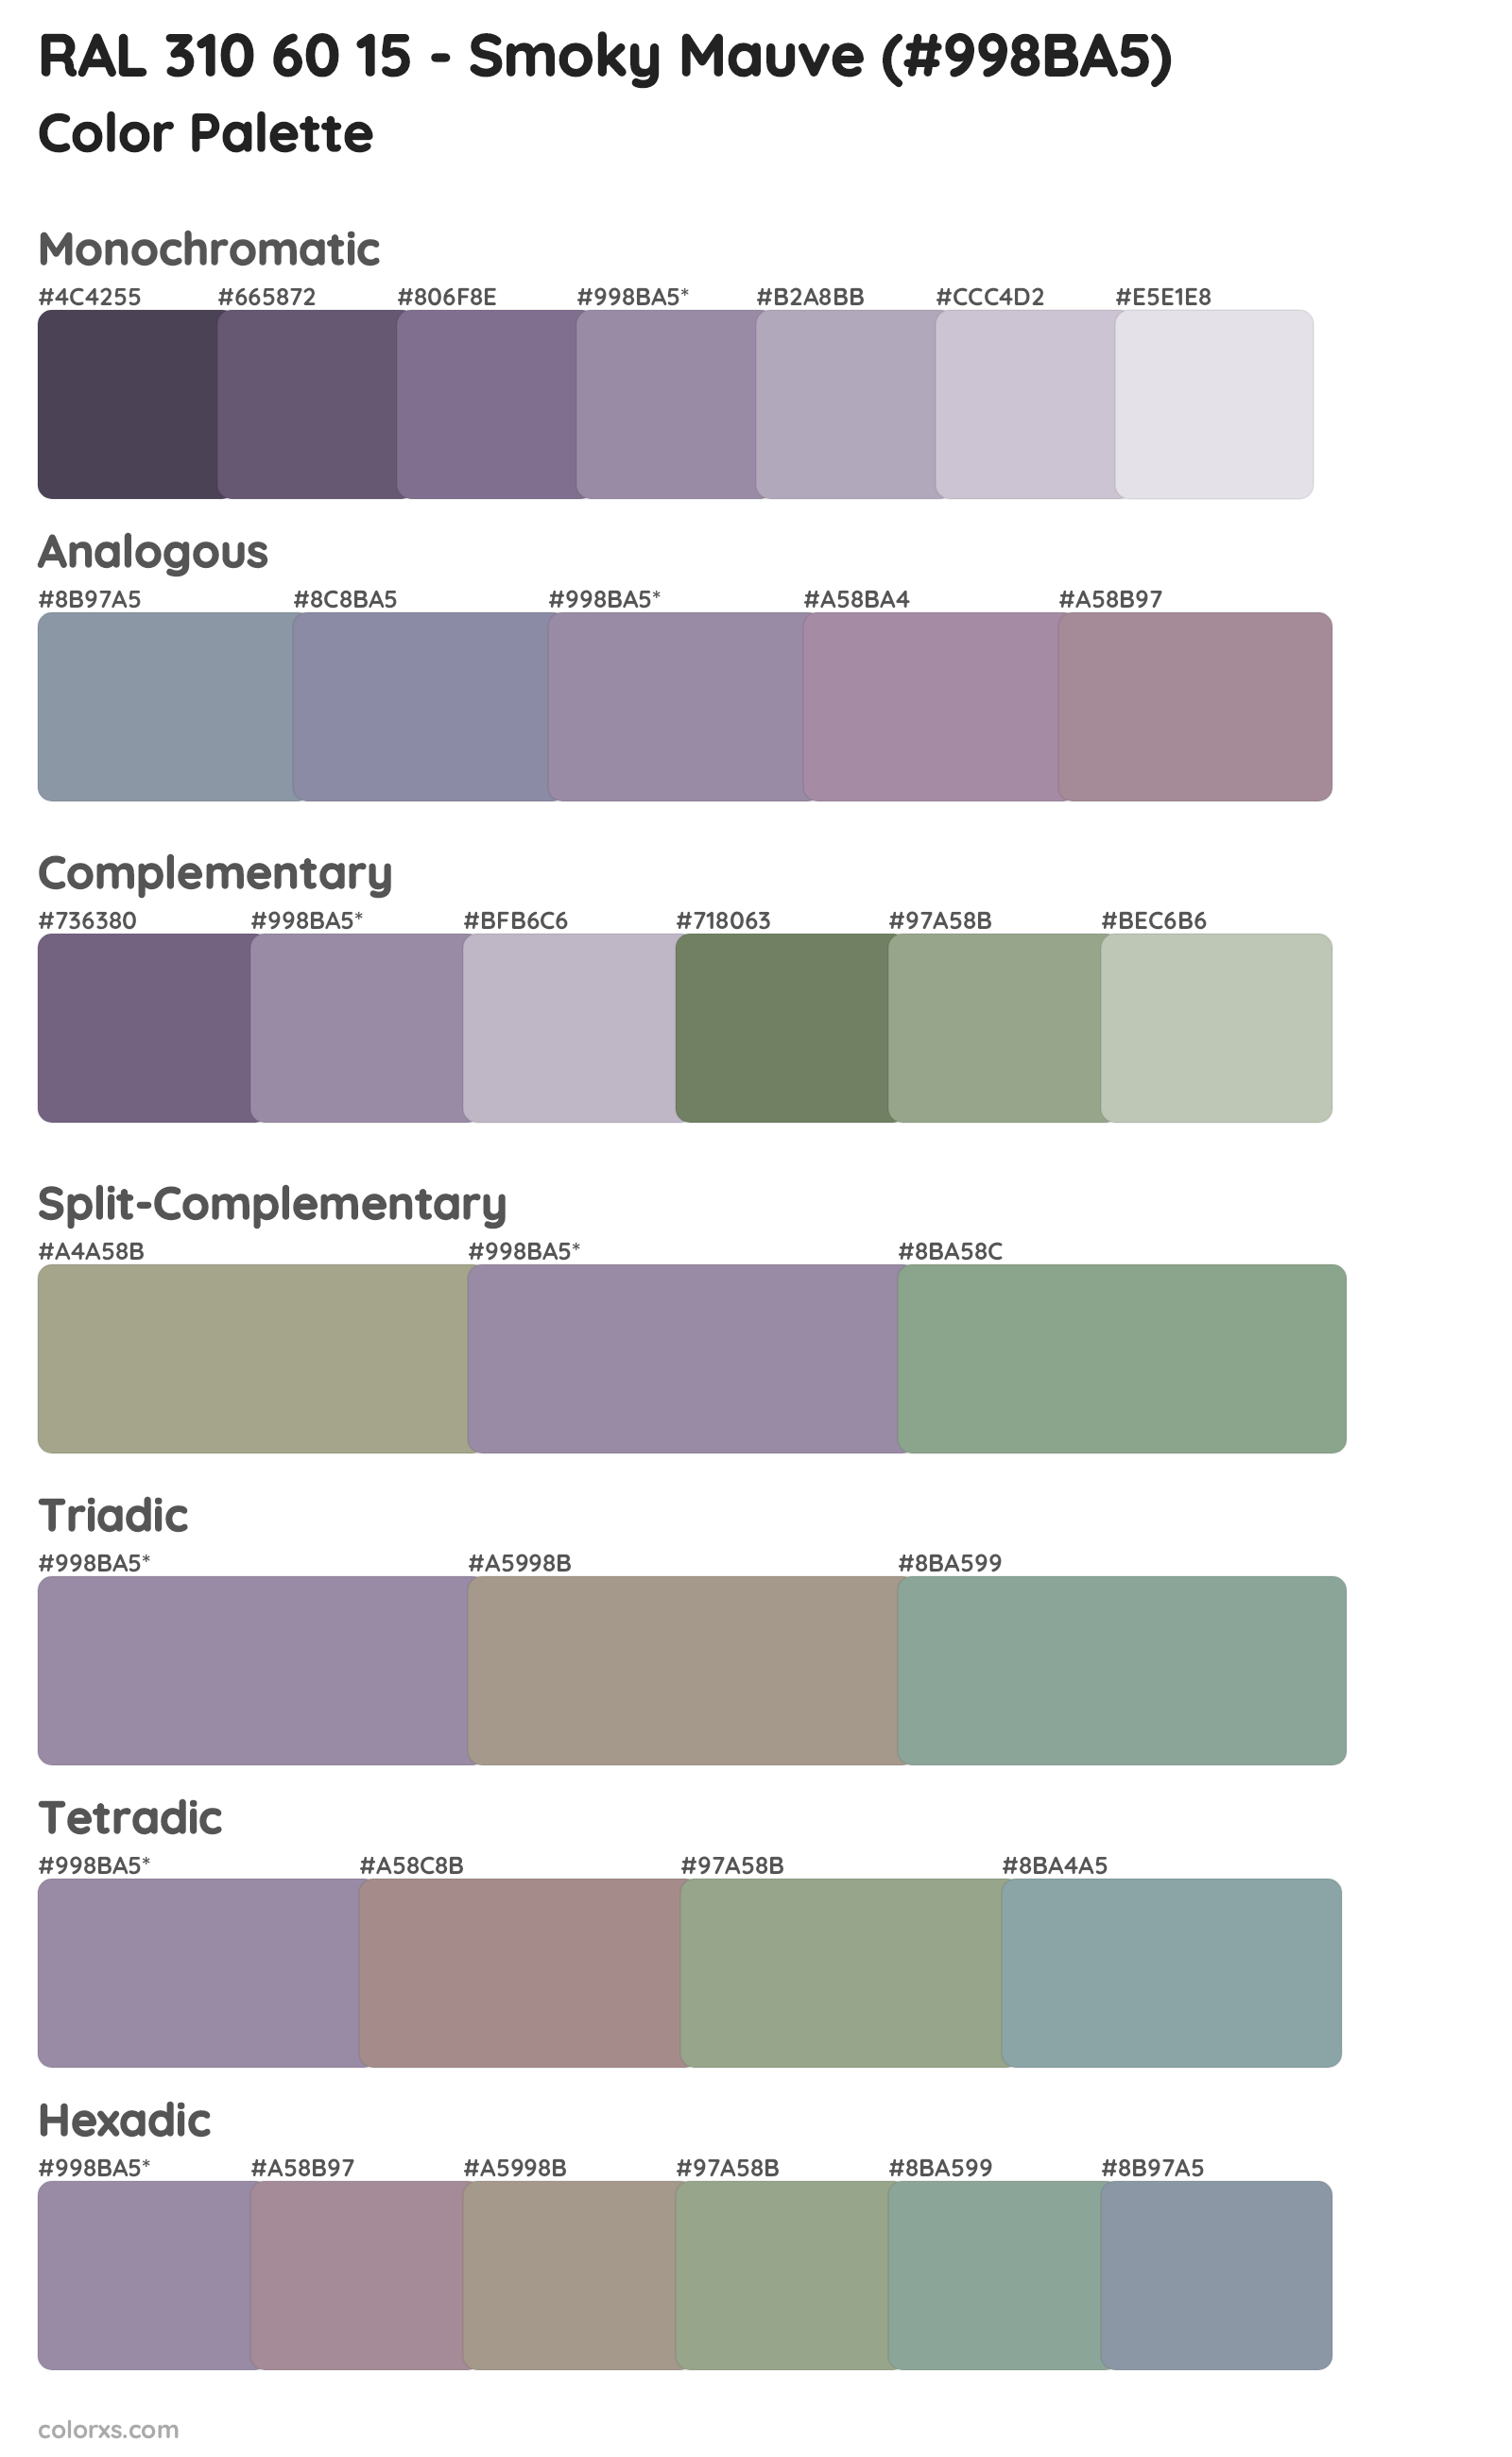 RAL 310 60 15 - Smoky Mauve Color Scheme Palettes